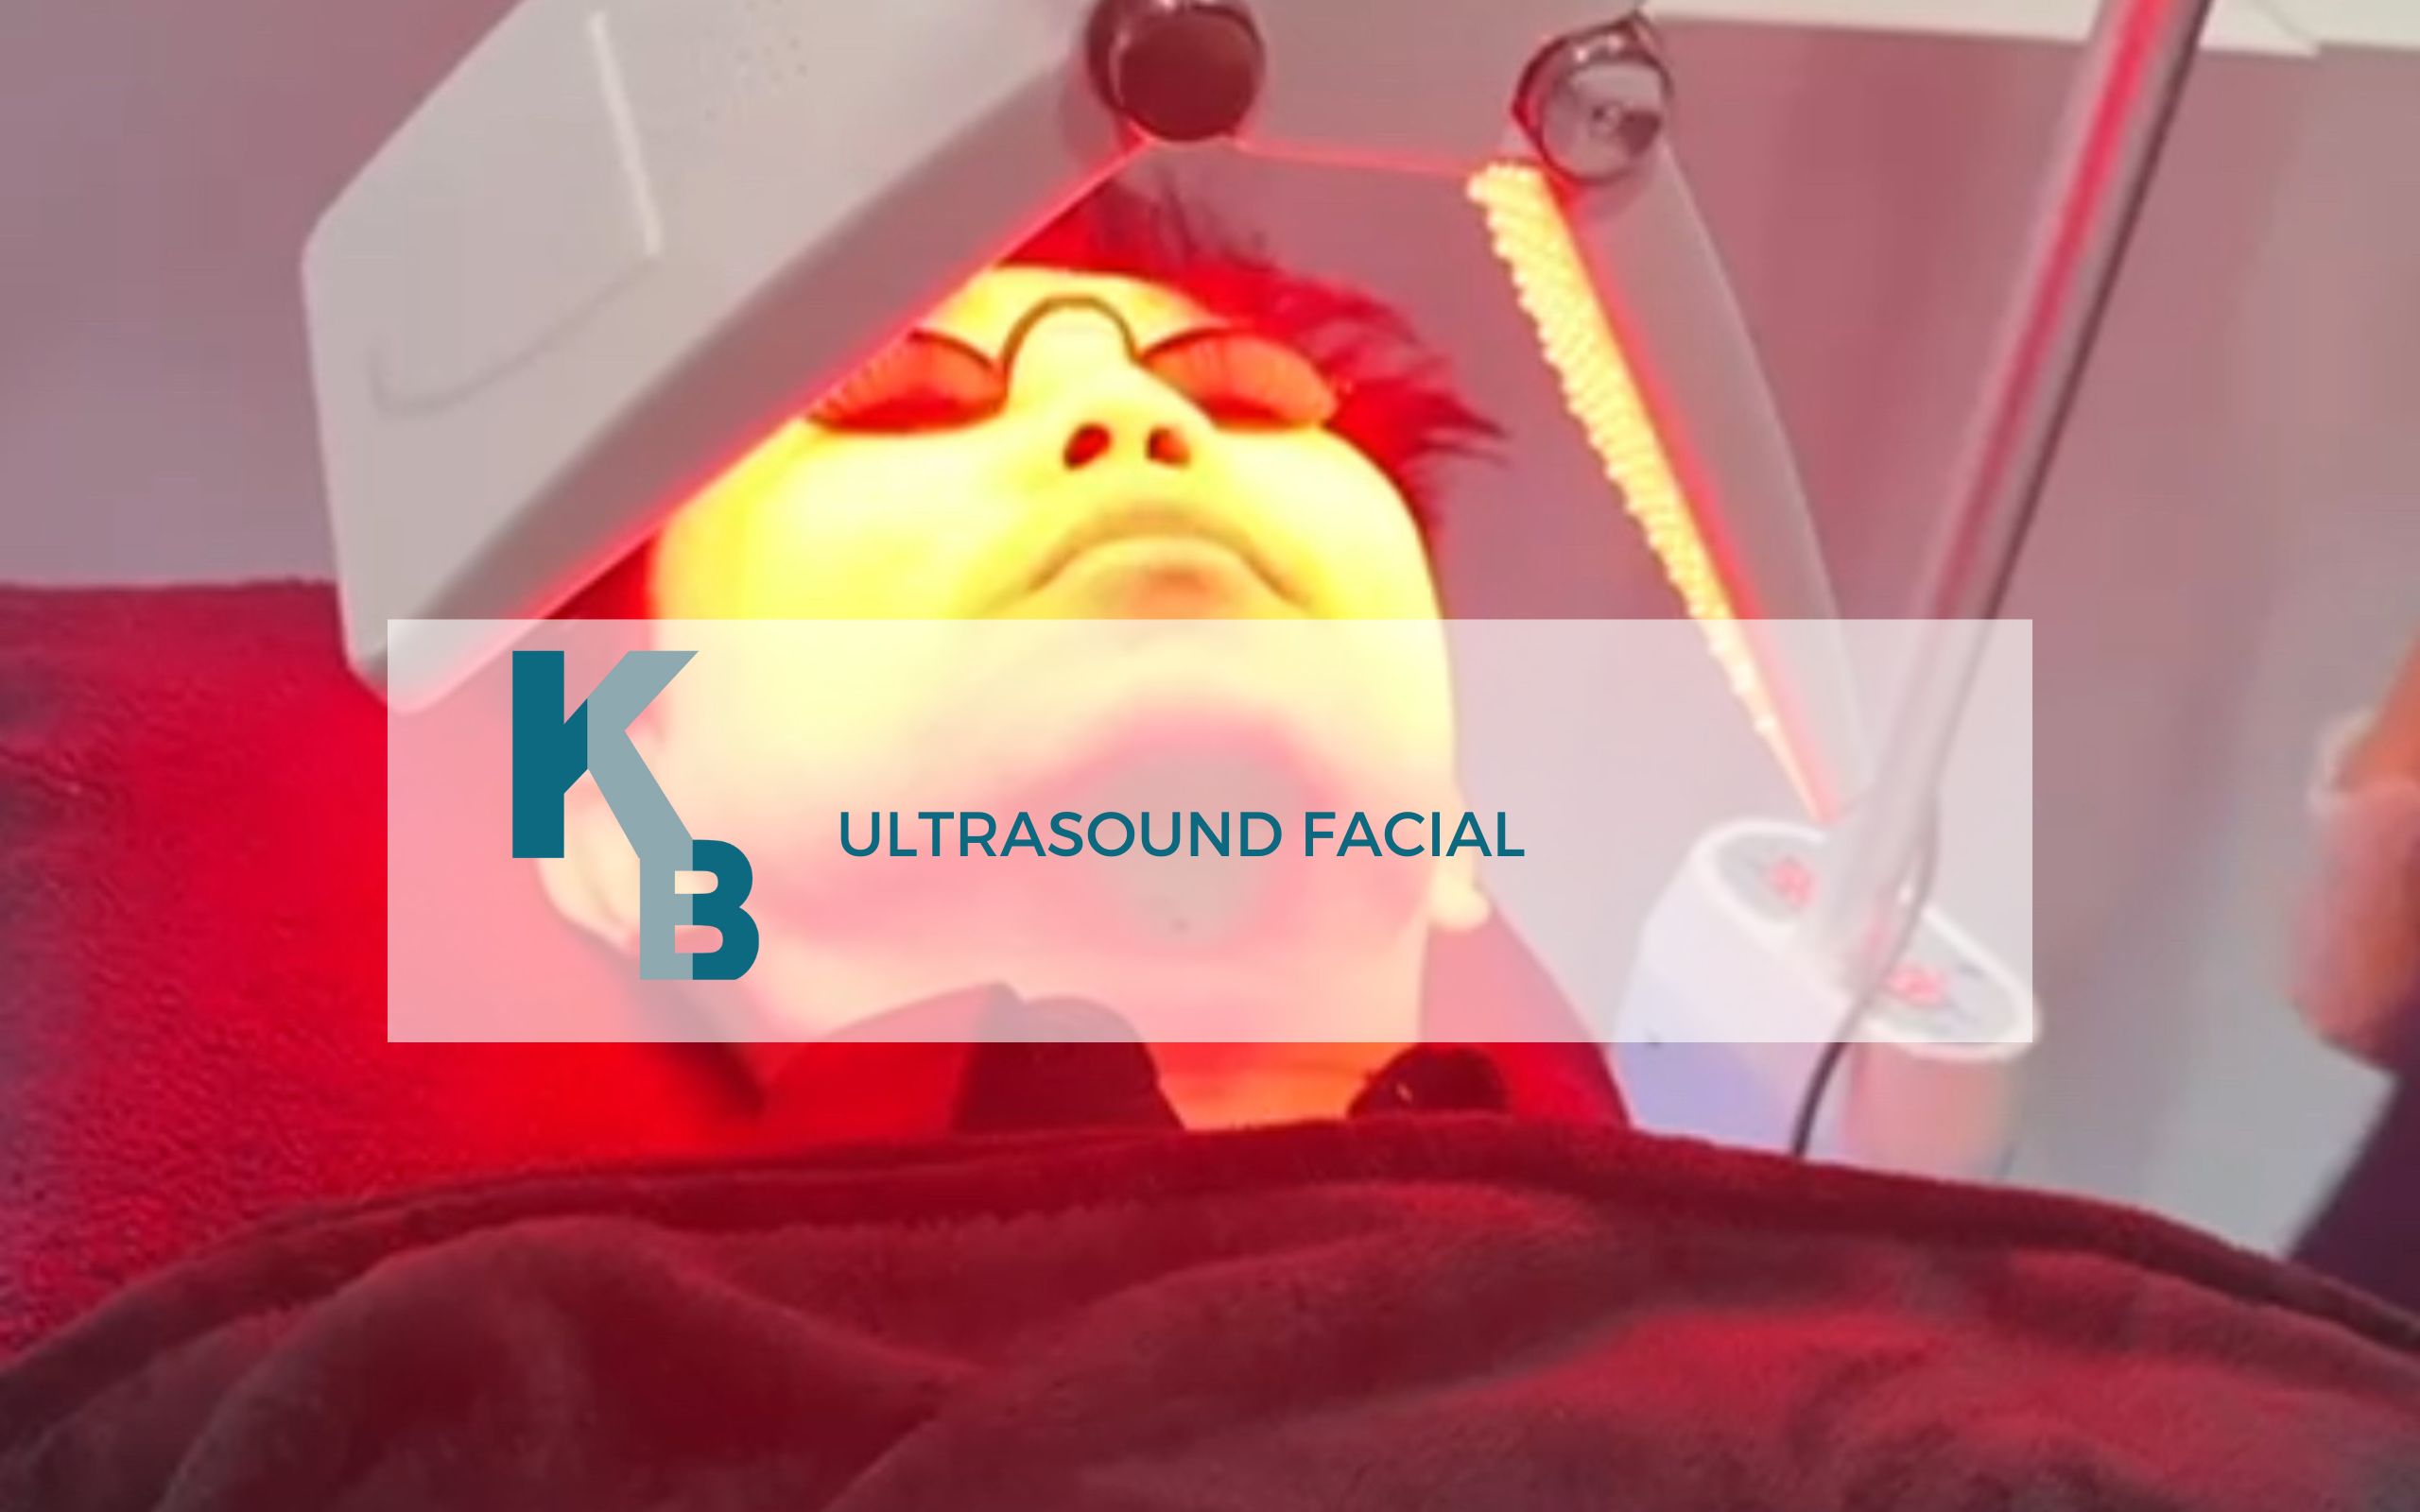 Ultrasound Facial